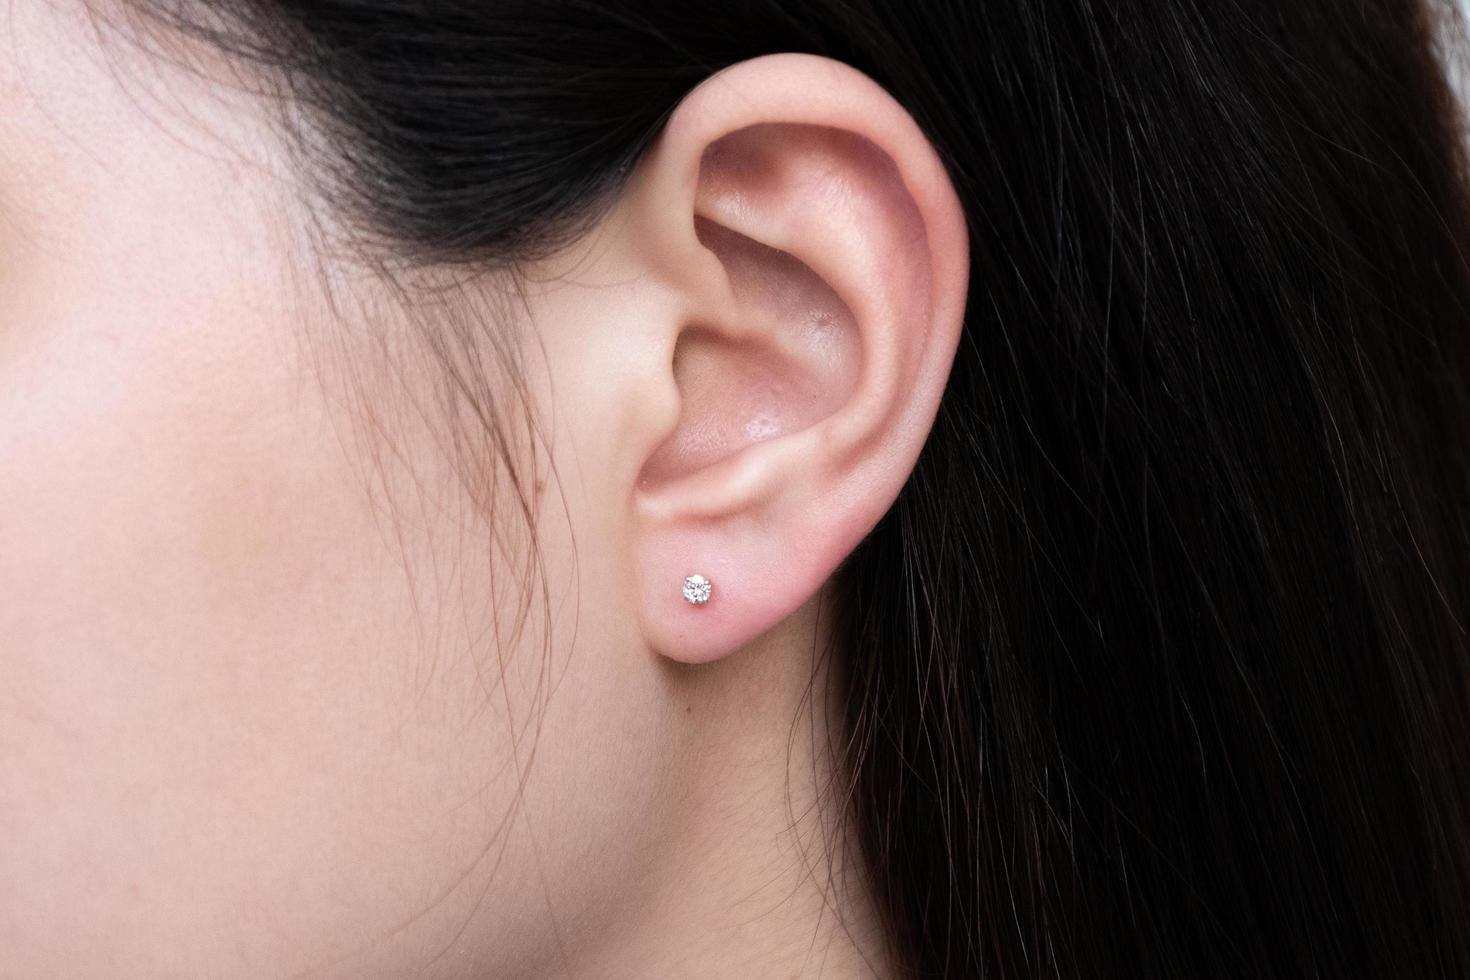 Pendiente de diamantes en la oreja de una mujer asiática. foto